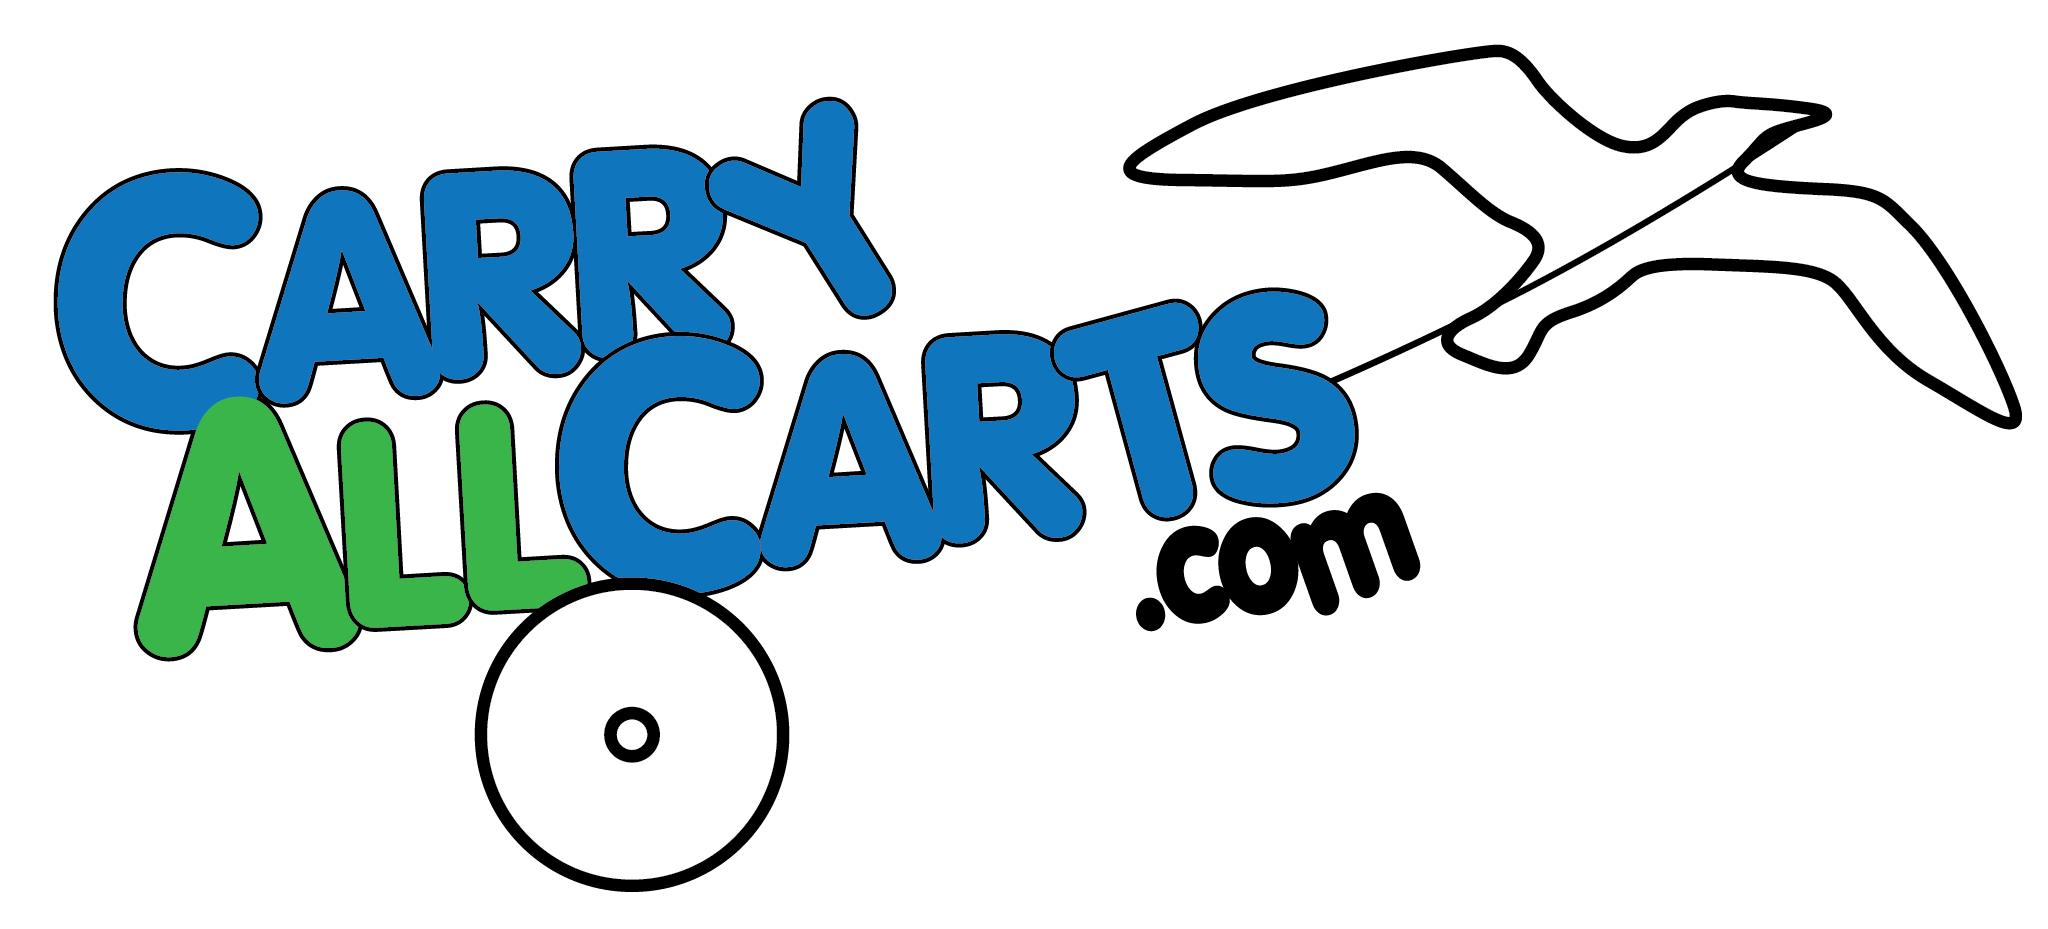 CarryAllCarts